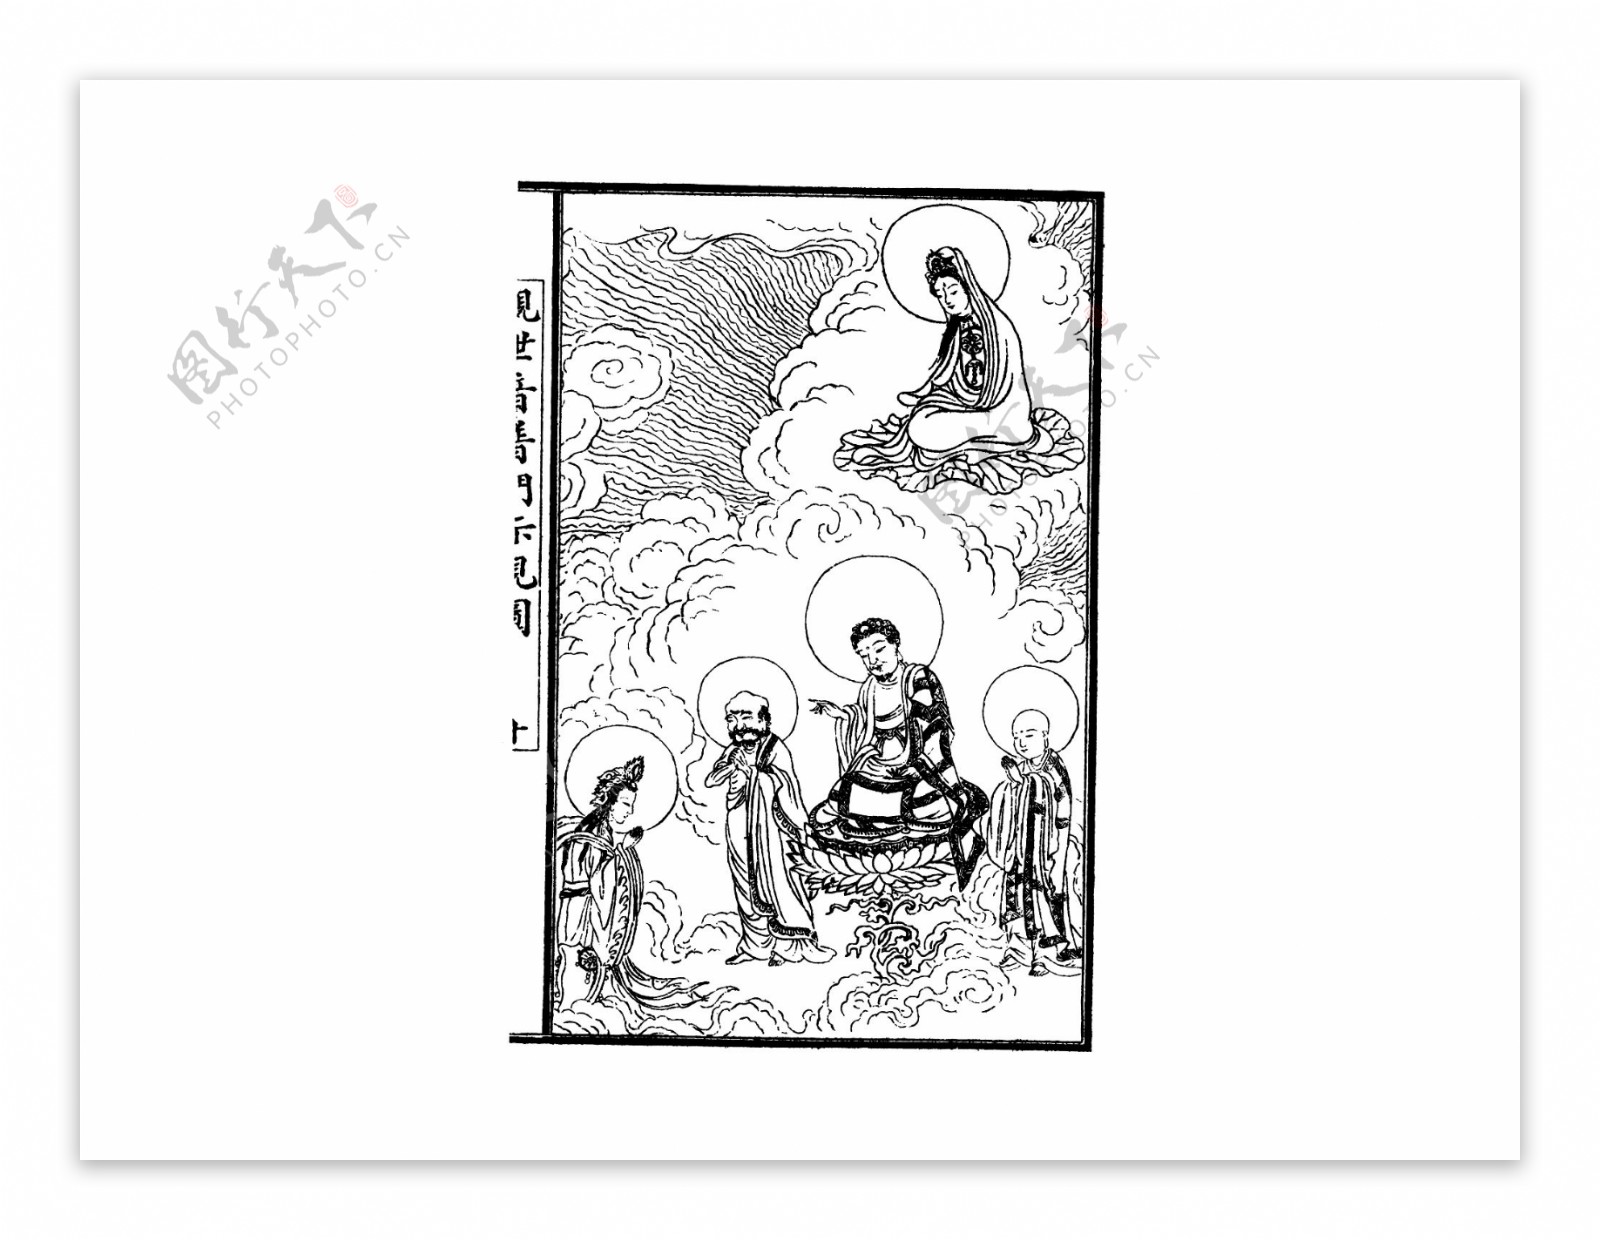 中国宗教人物插画素材